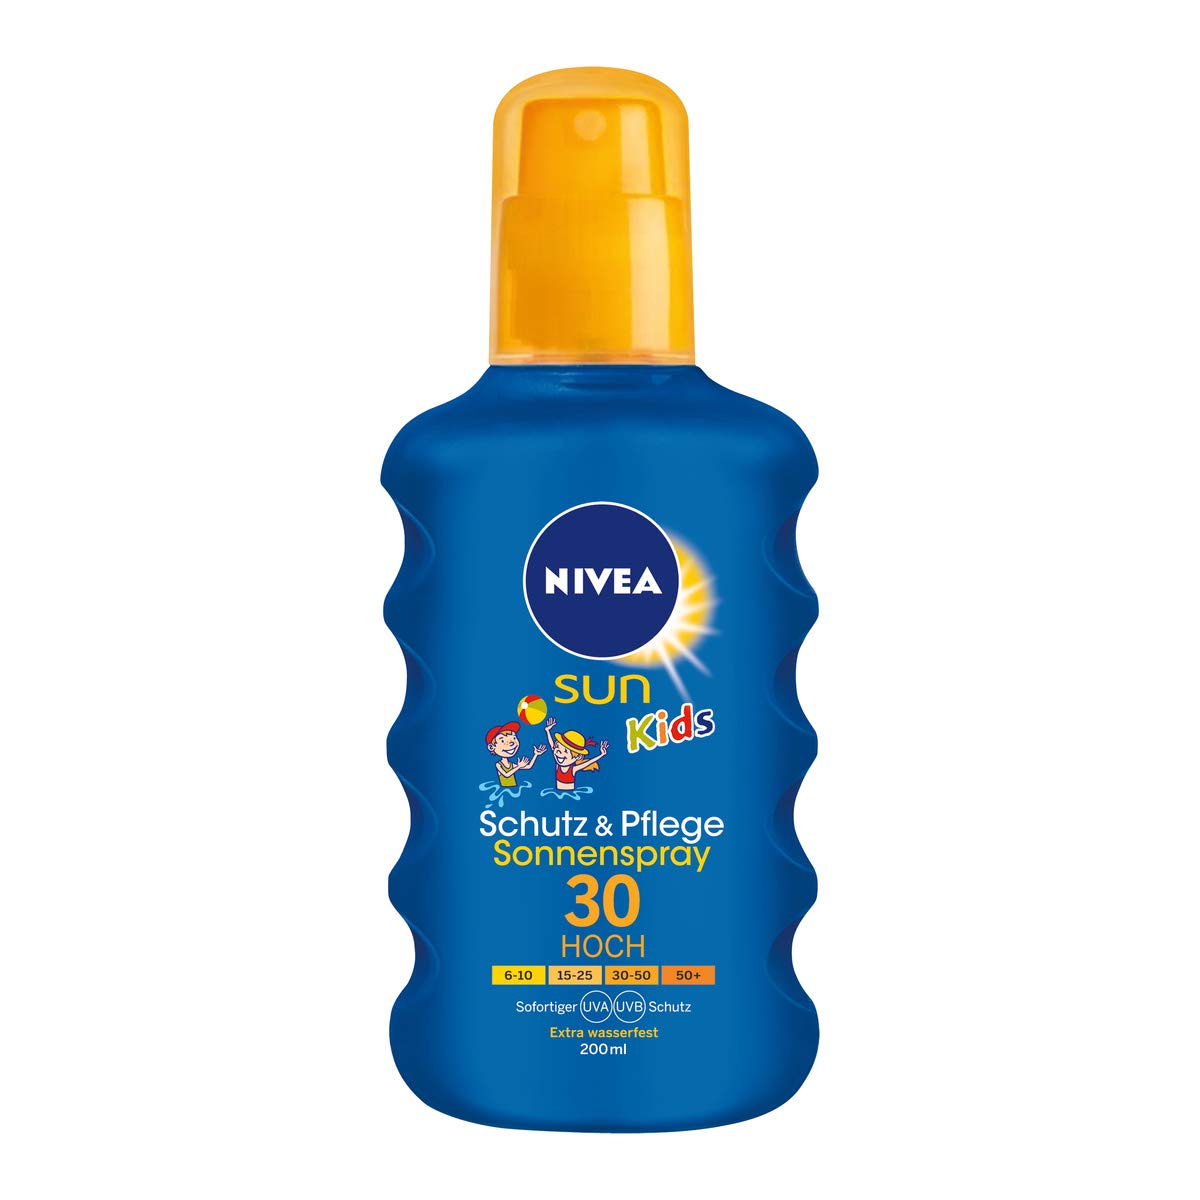 NIVEA SUN Sonnenspray für Kinder, Lichtschutzfaktor 30, 200 ml Sprühflasche, Kids Schutz & Pflege